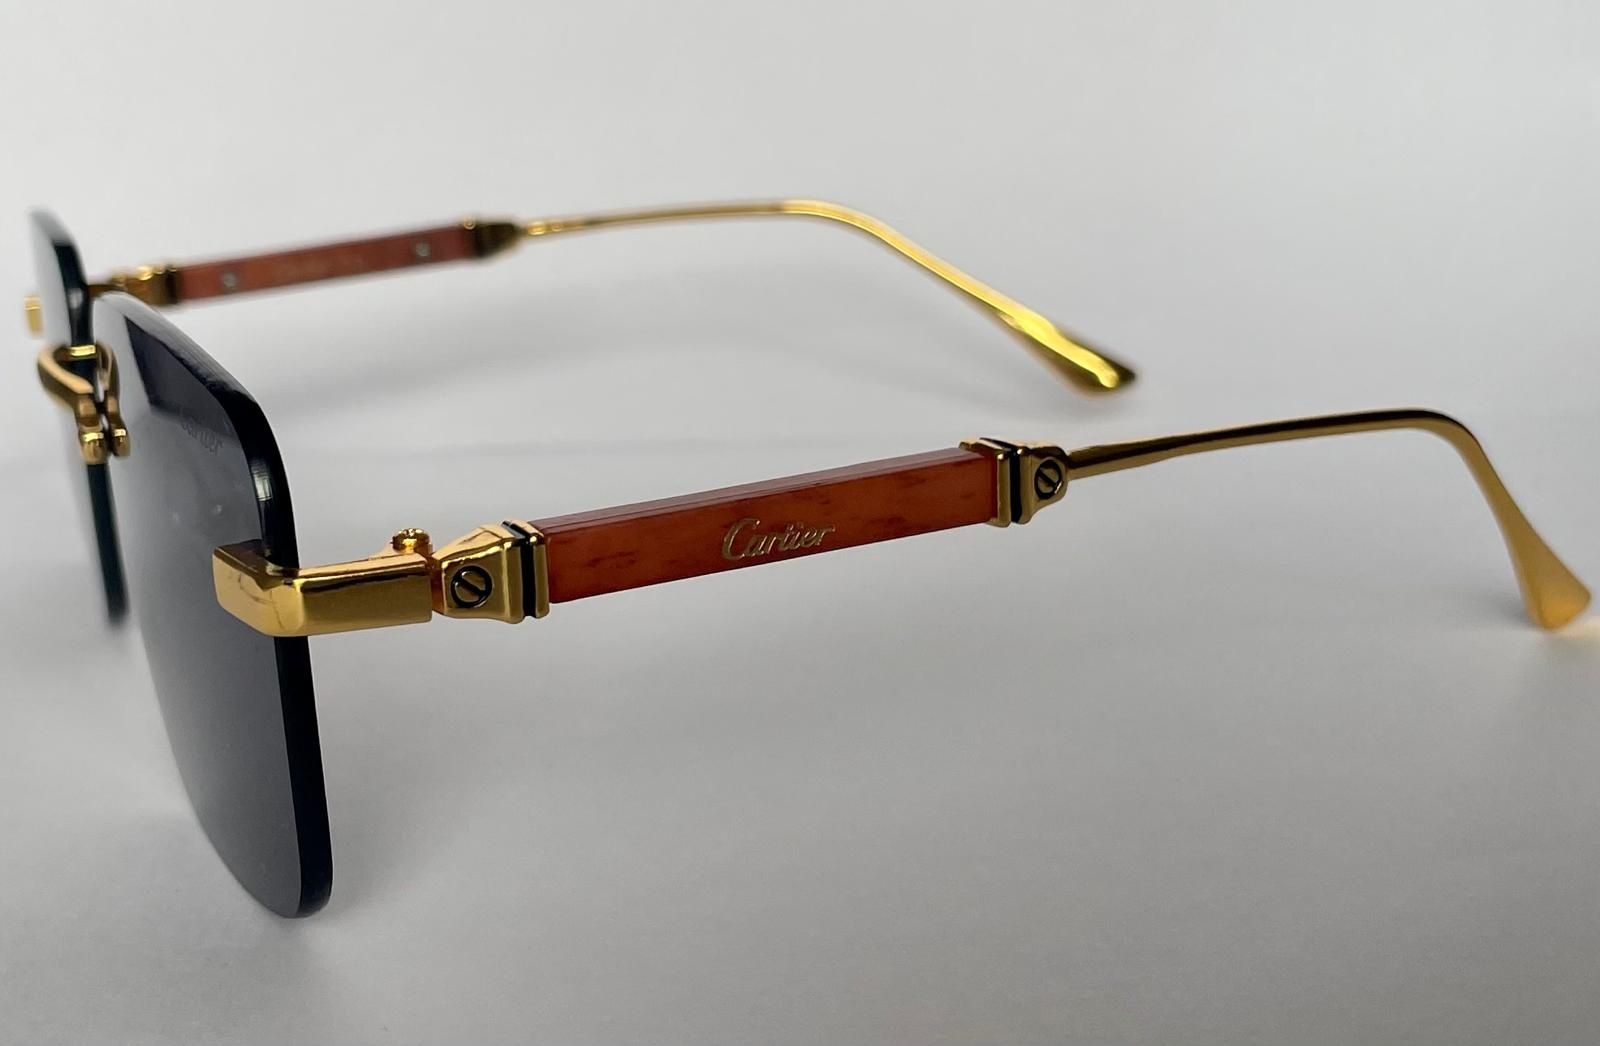 Okulary przeciwsłoneczne męskie Cartier